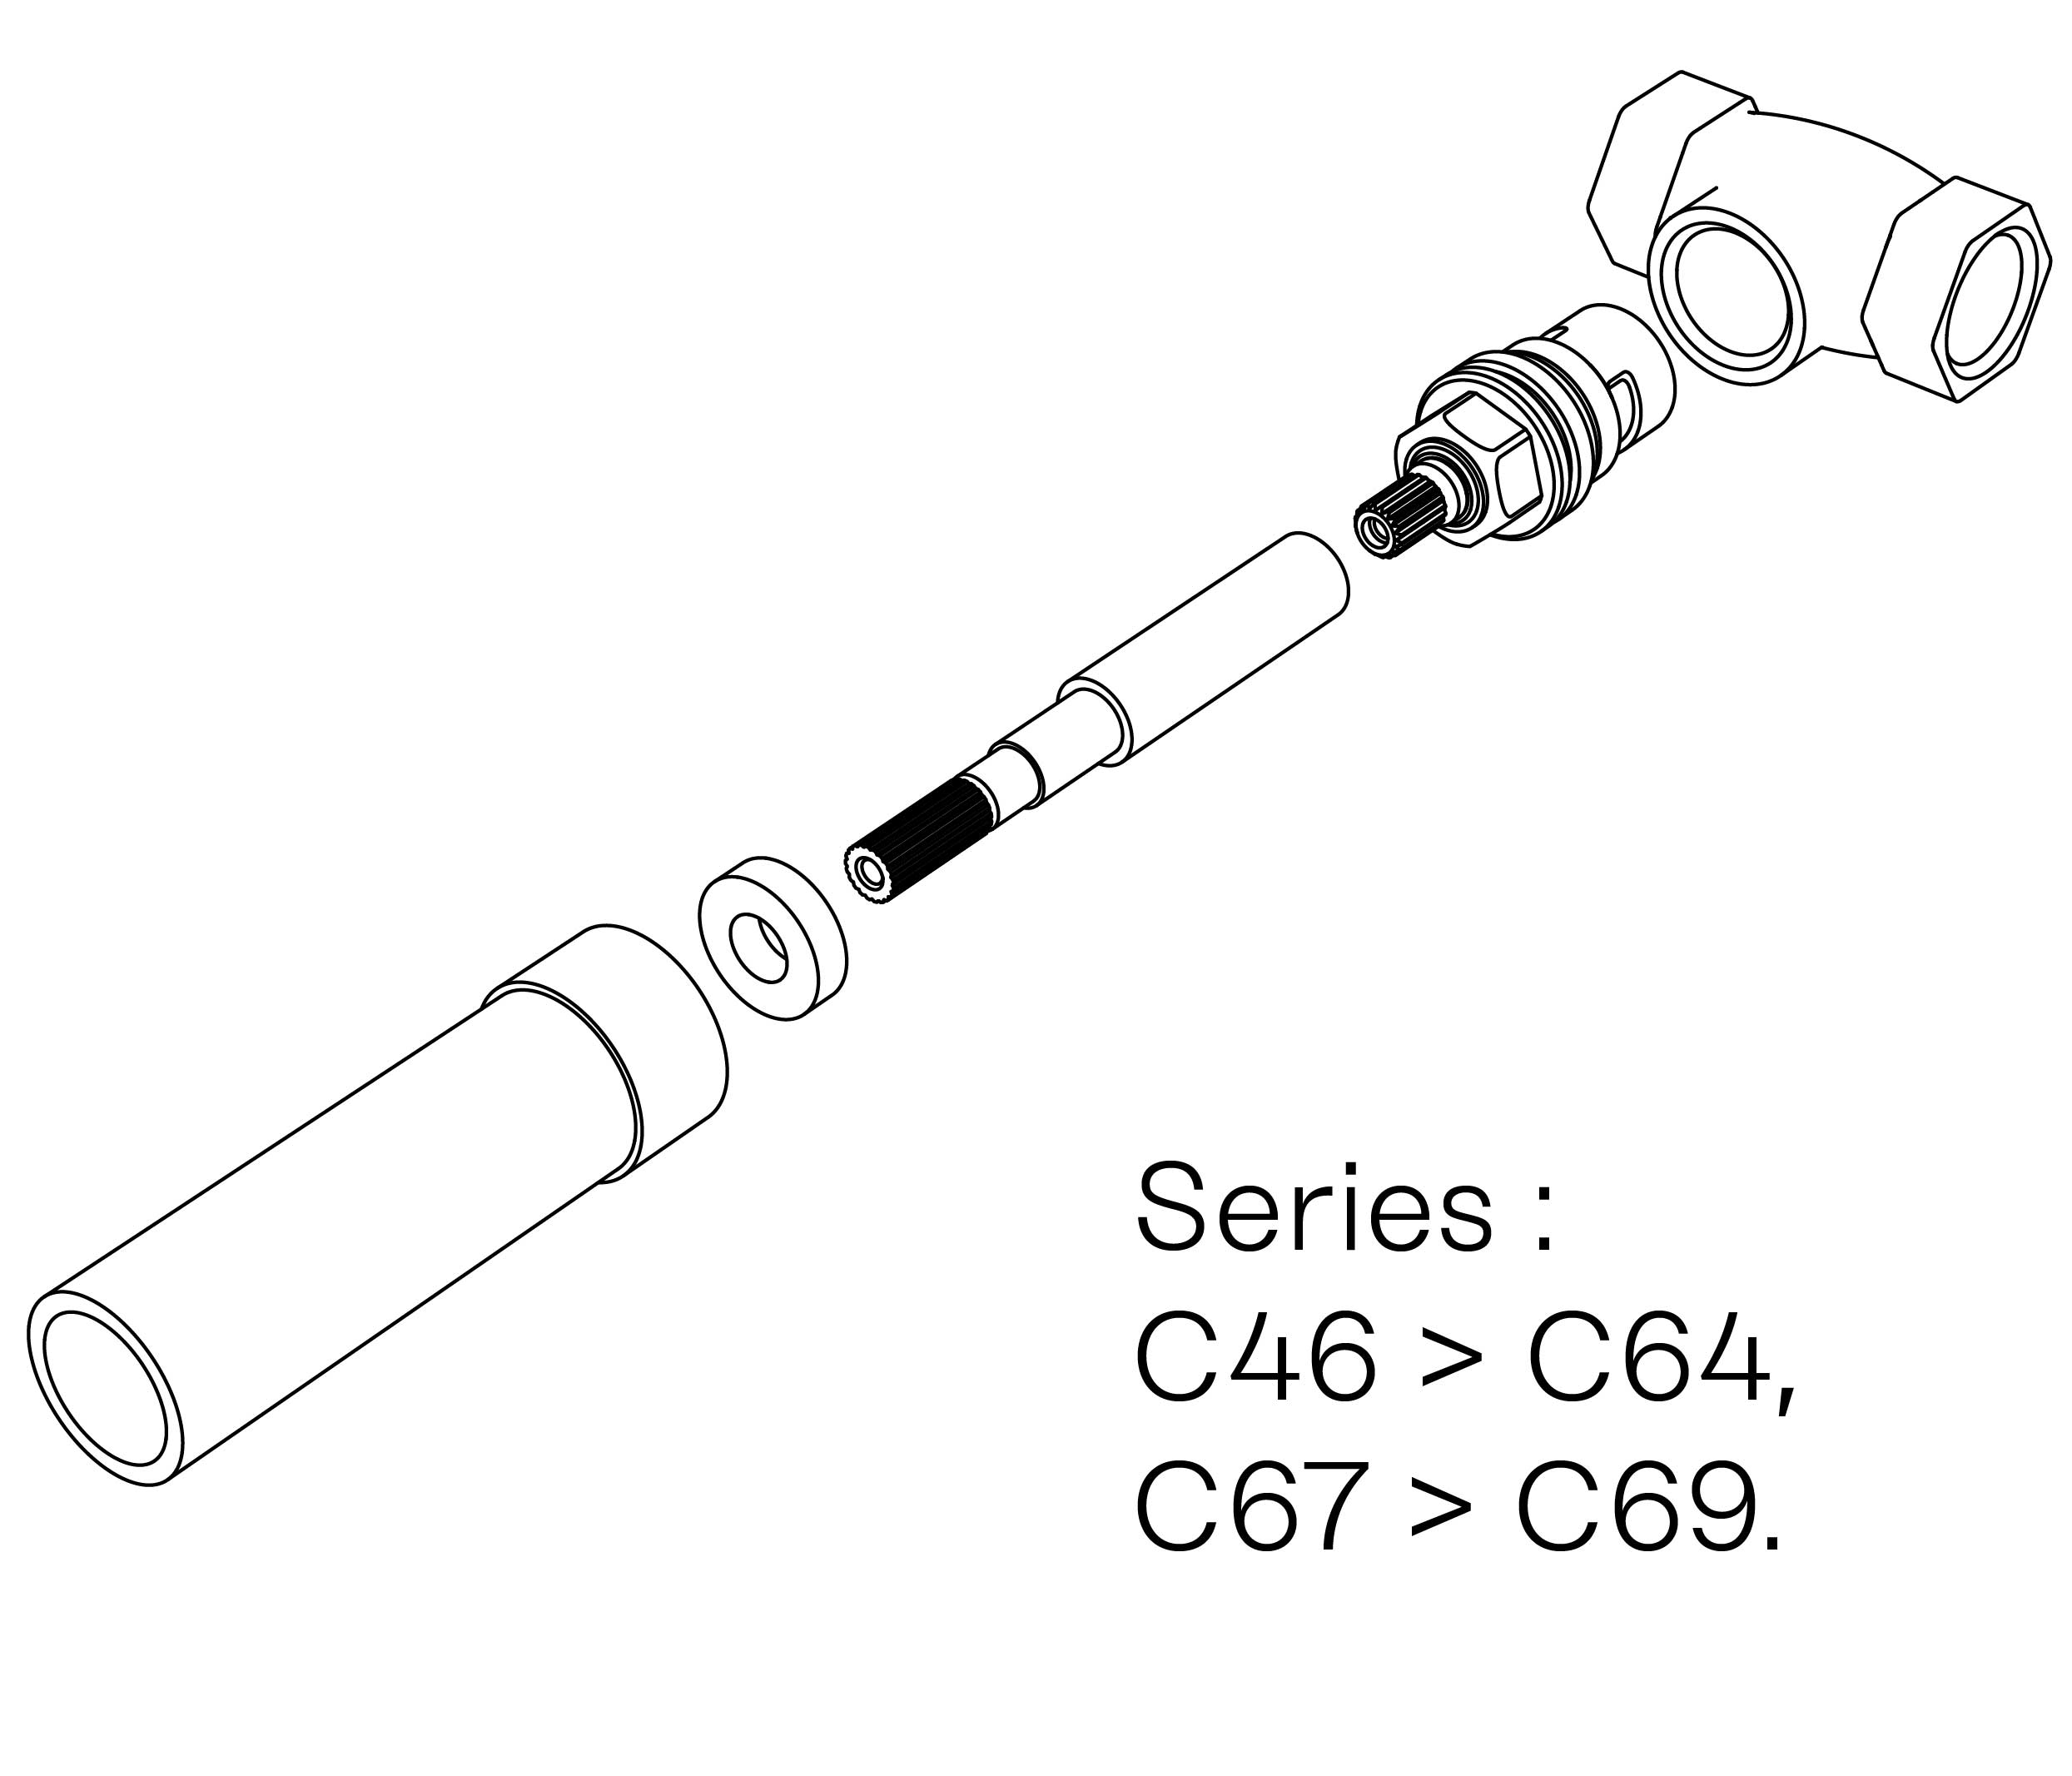 C00-22K29H Kit #2 for W-M valve 3/4″, 1/4 turn, Left